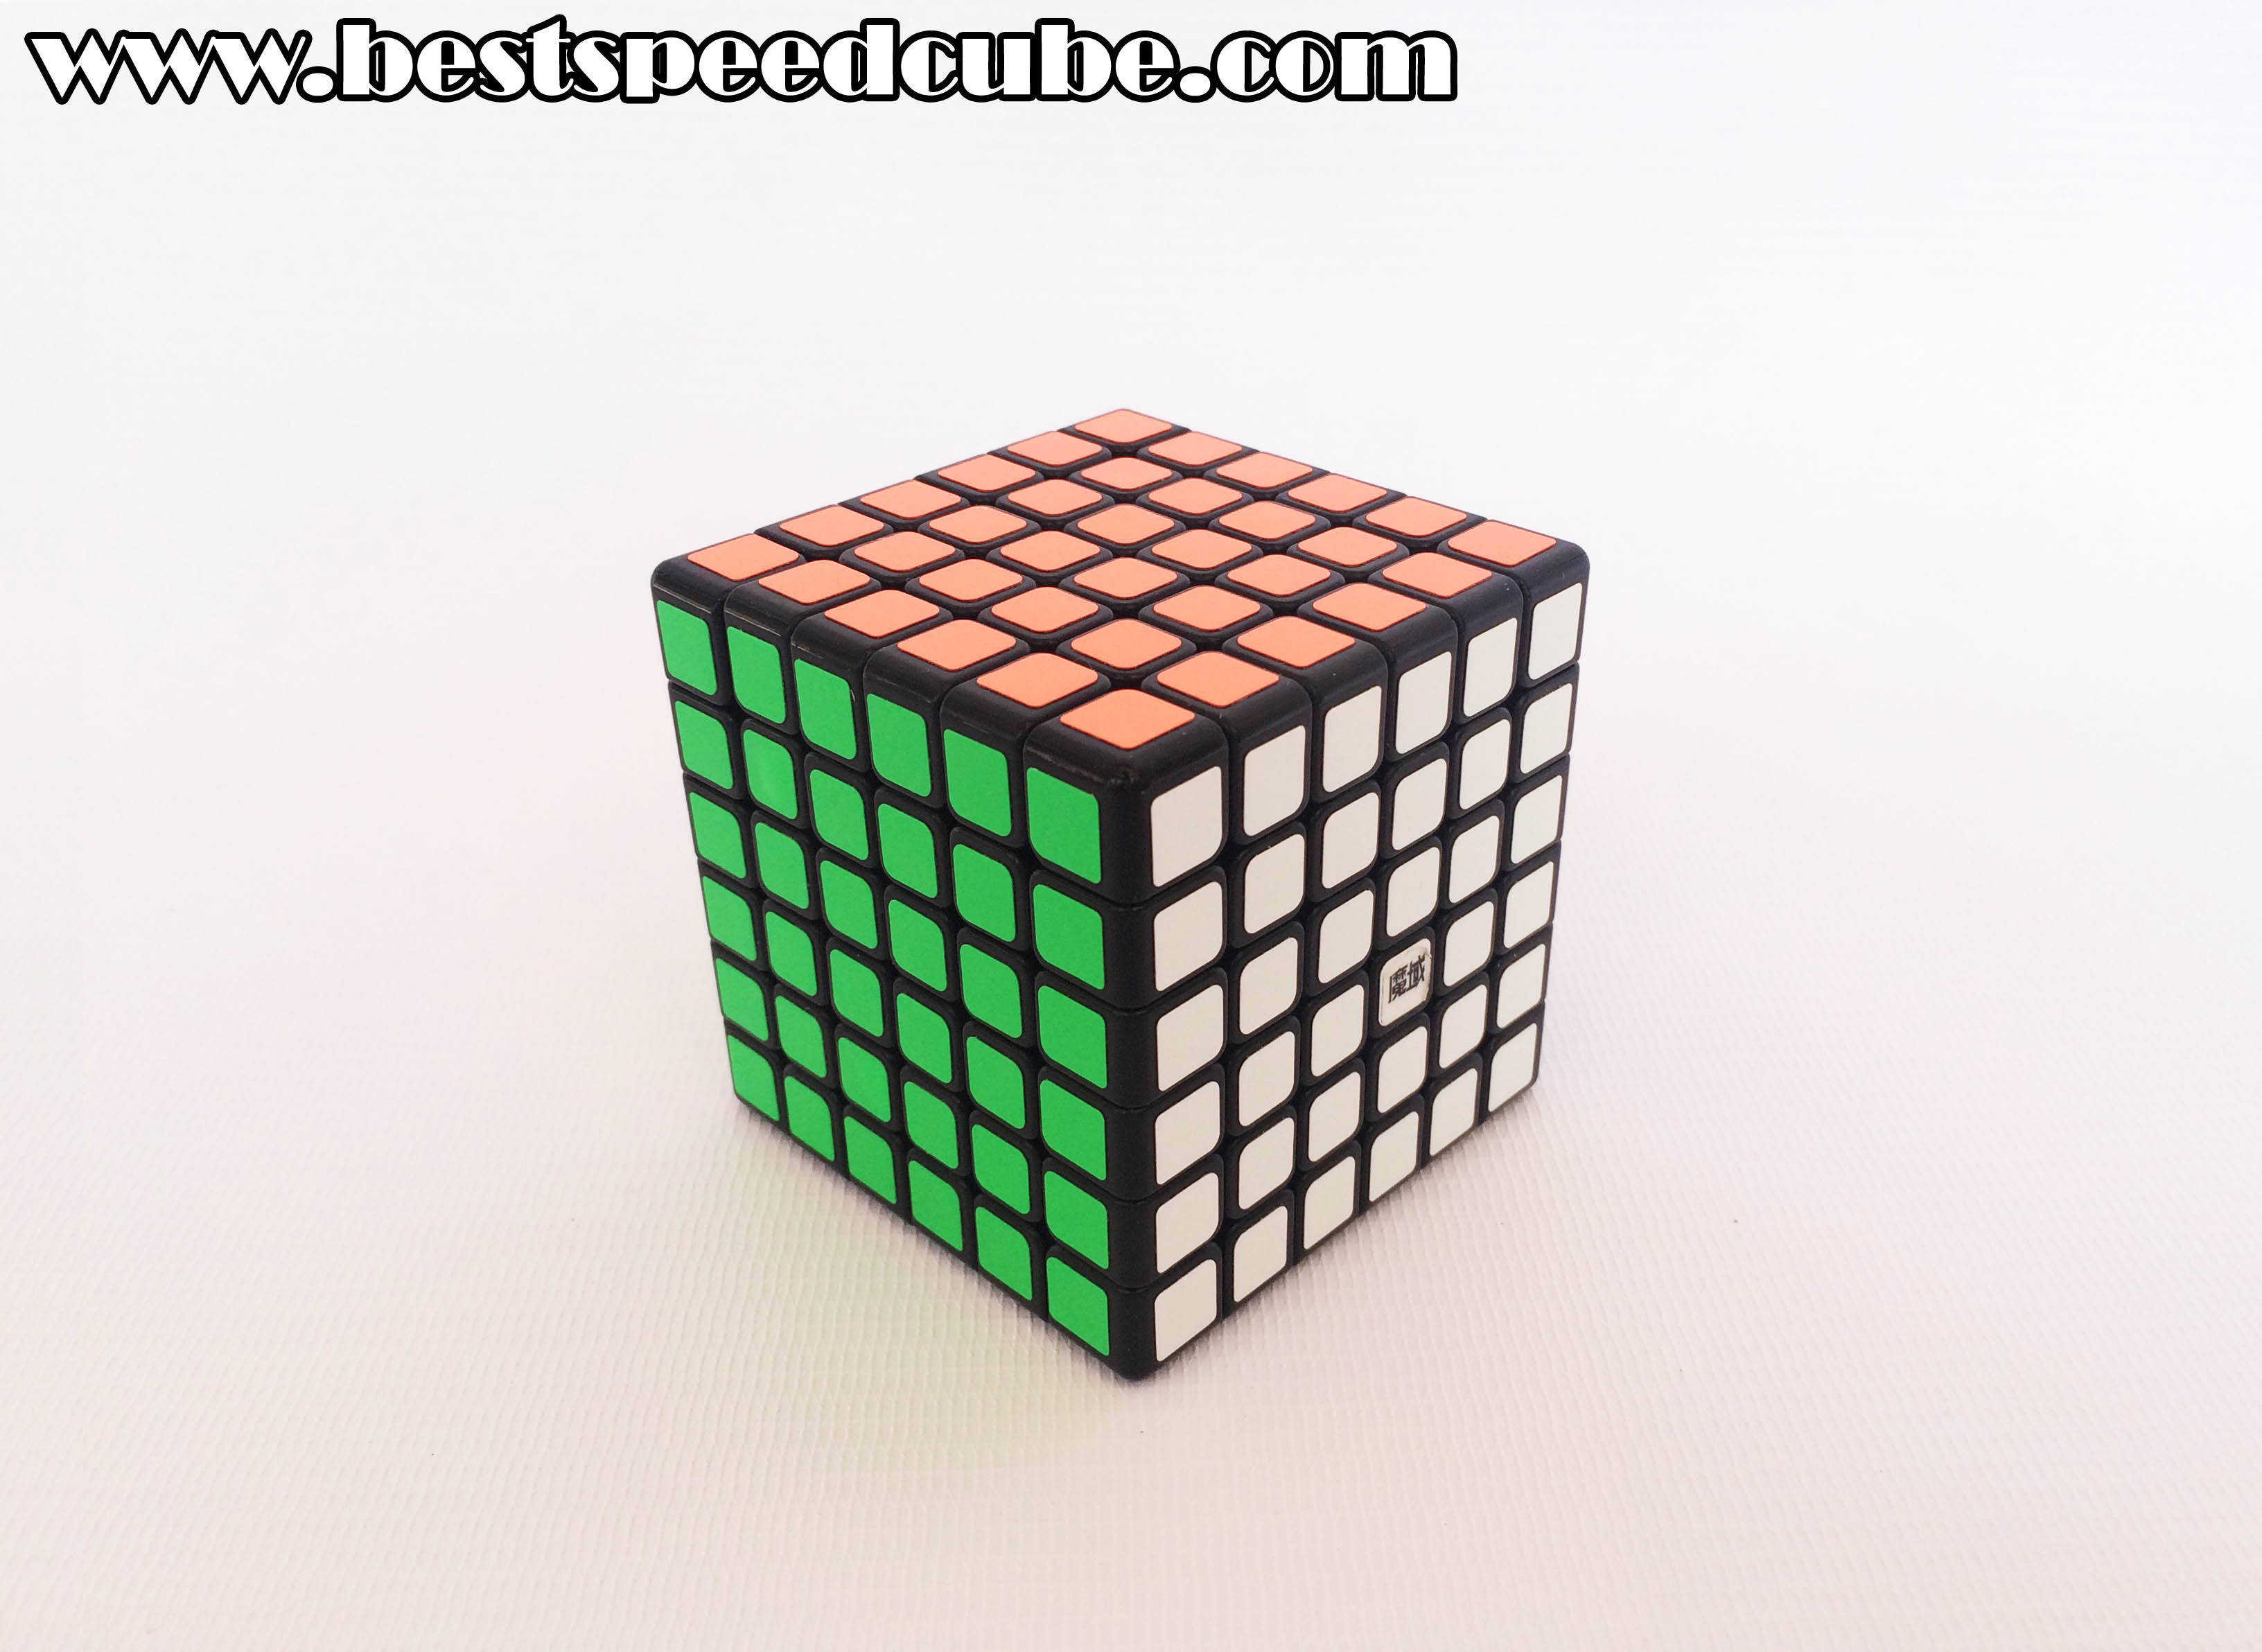 Best Speed Cube Guide | Best Speed Cube